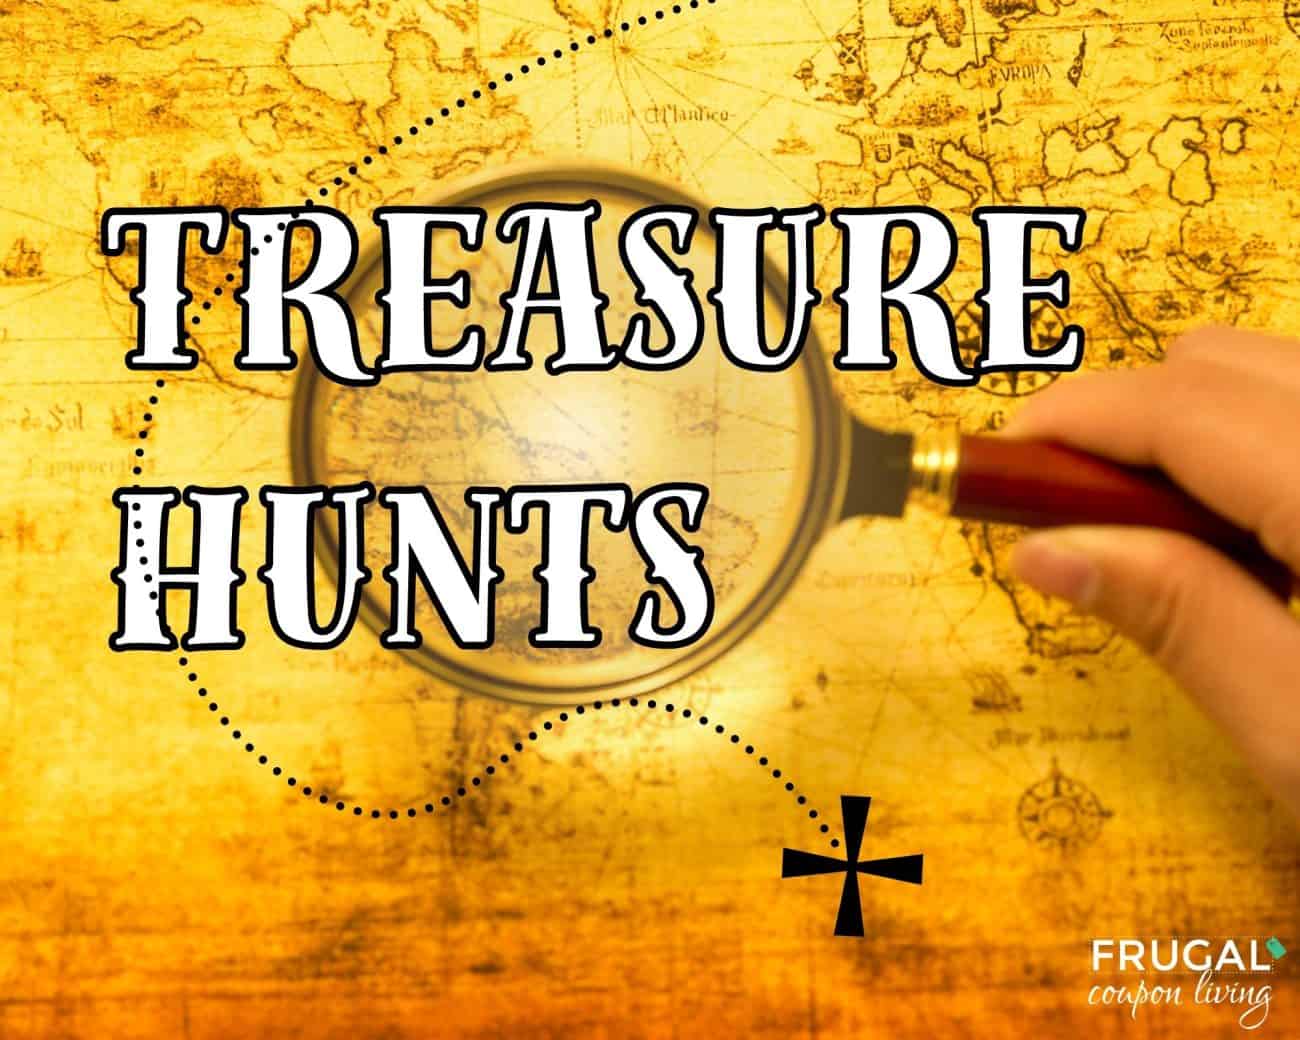 treasure hunts explained